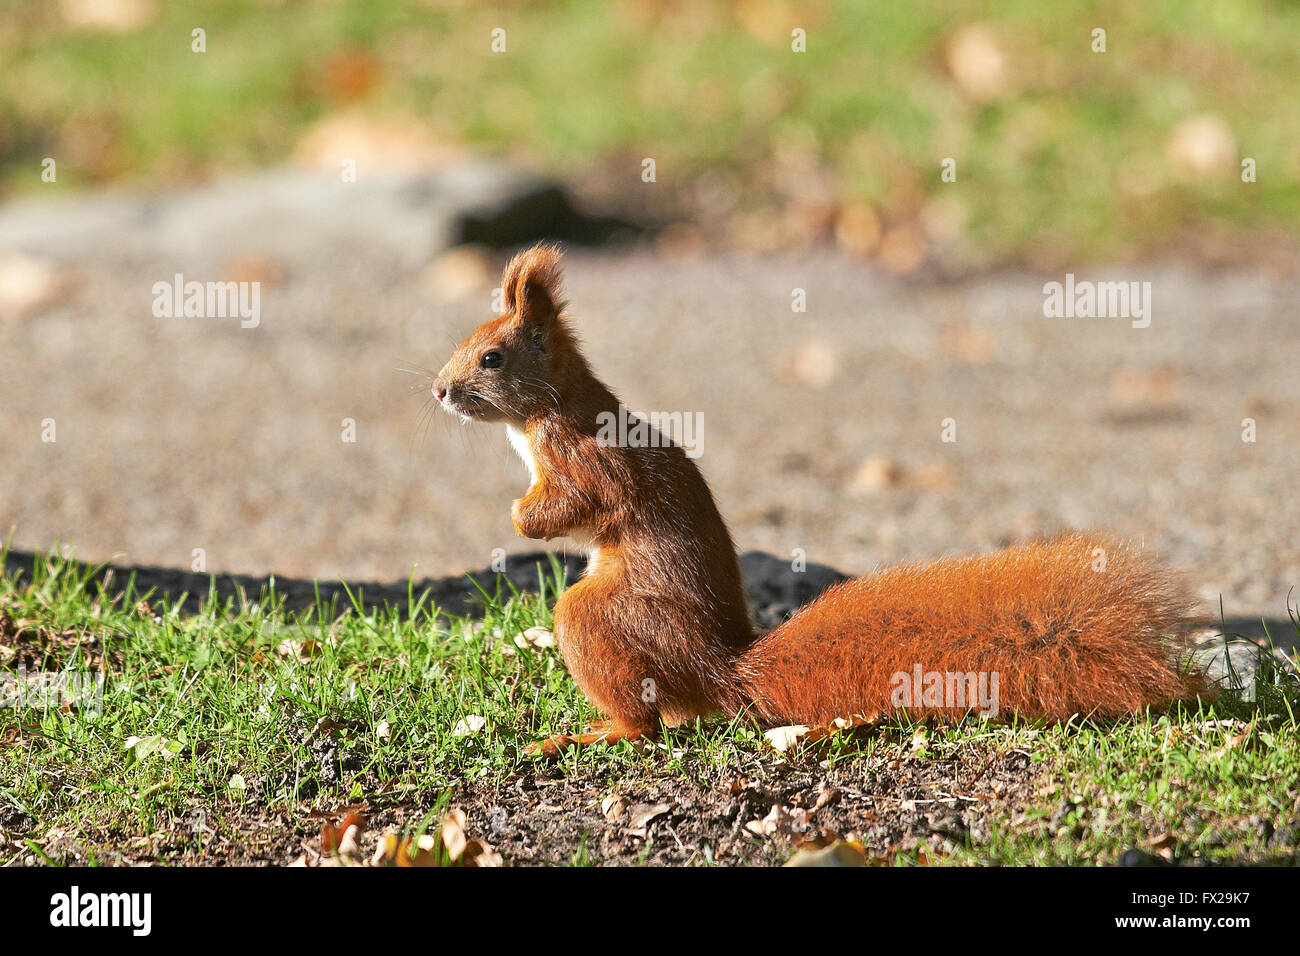 Eurasian scoiattolo rosso seduto a terra Foto Stock